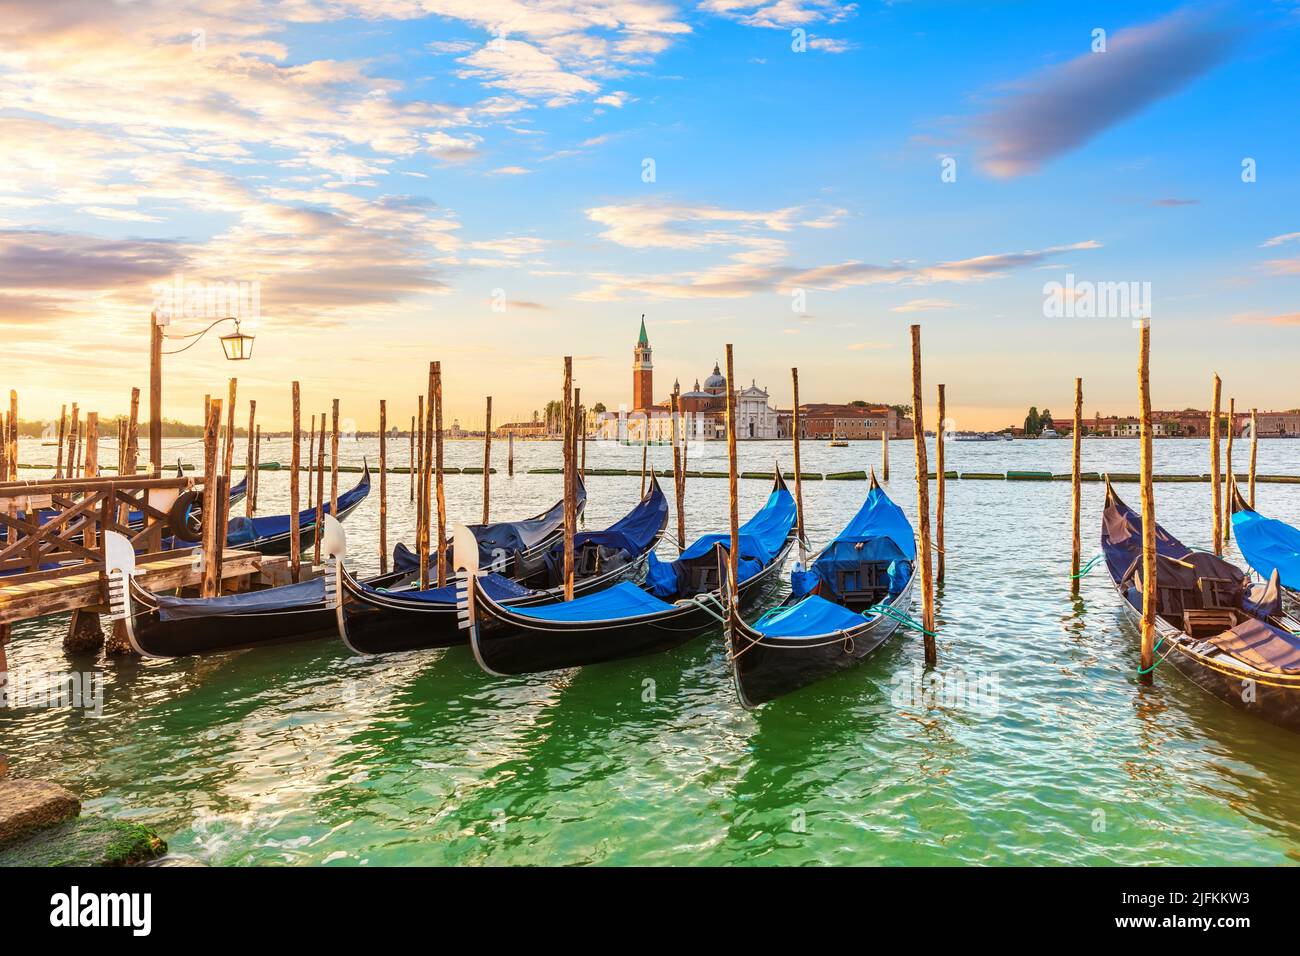 San Giorgio Maggiore Island and Gondolas moored nearby, Venice, Italy. Stock Photo